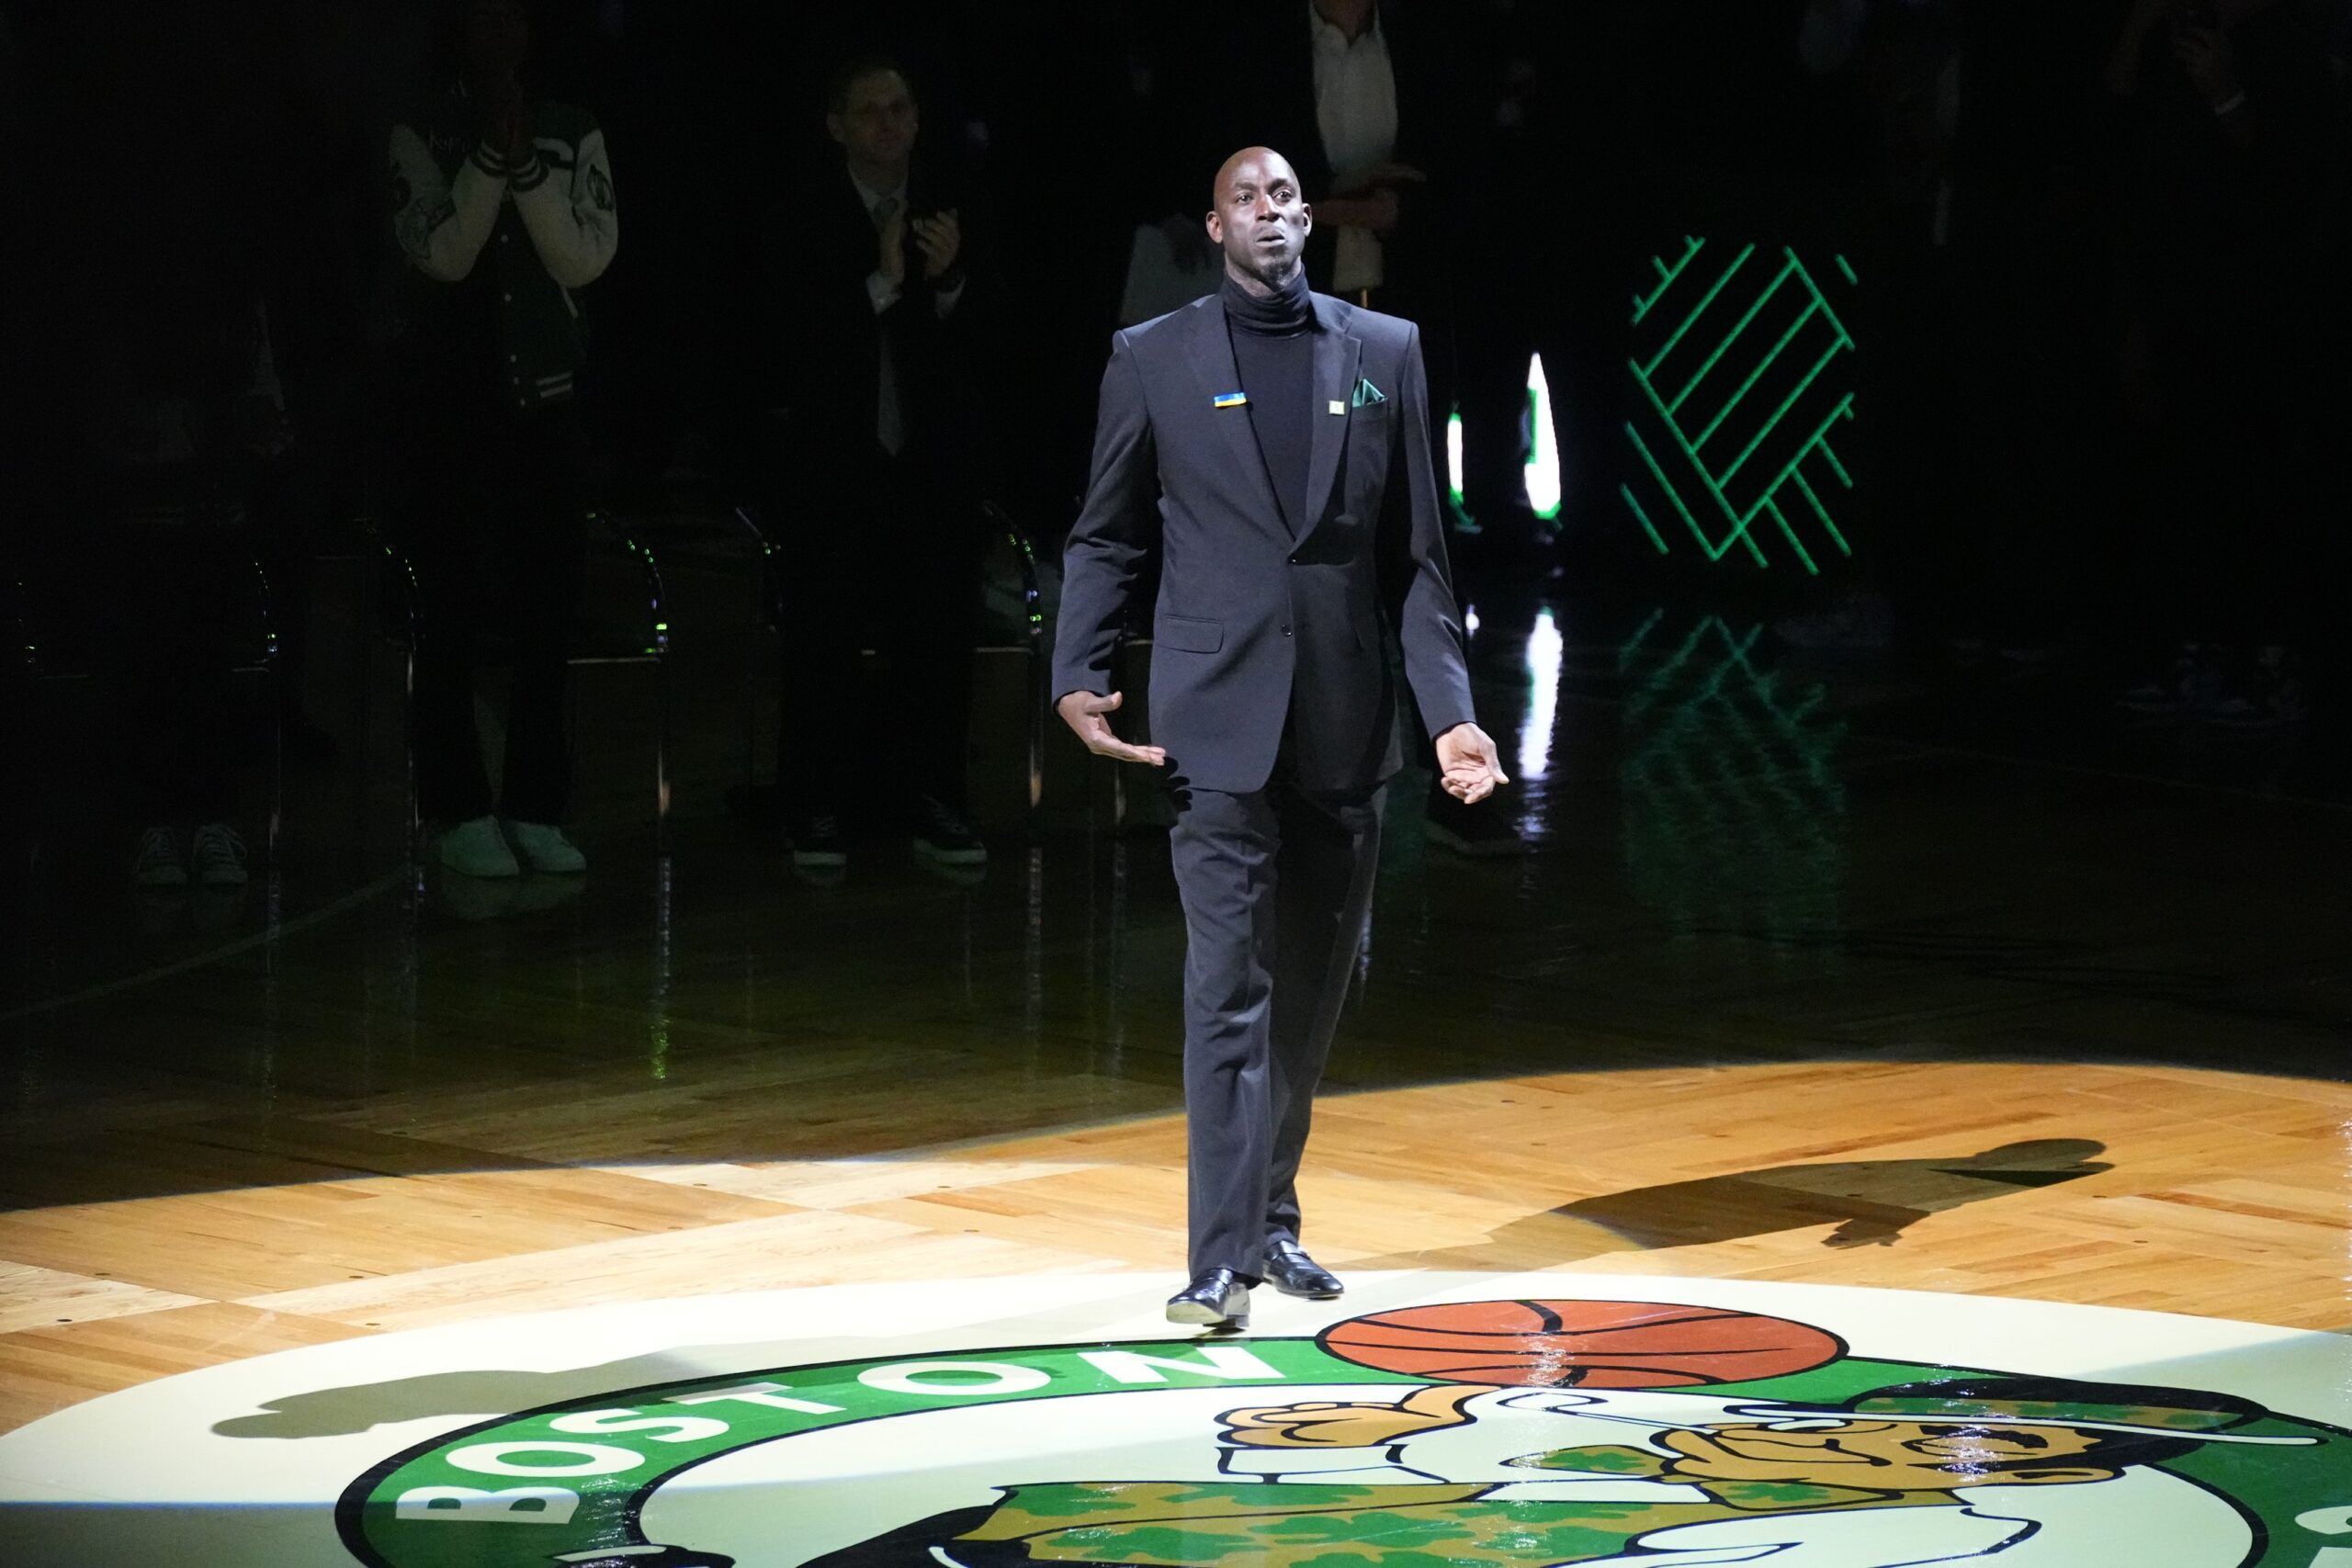 Celtics will retire Kevin Garnett's number on March 13